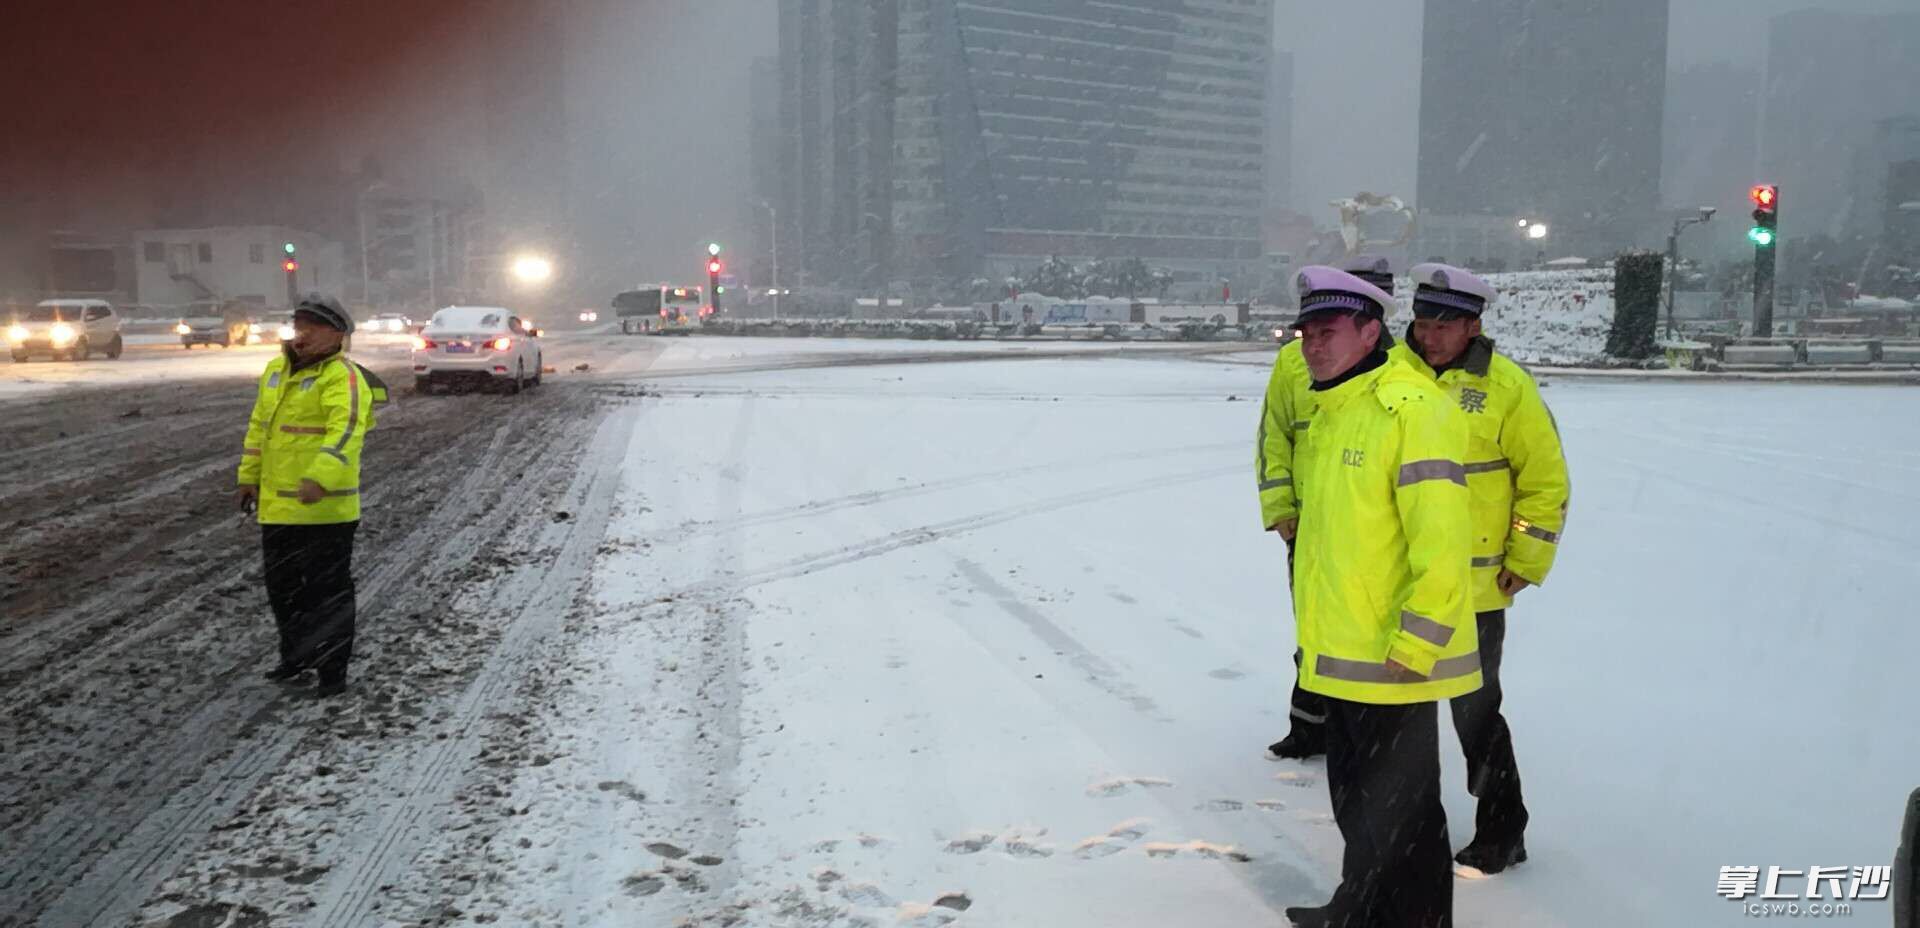 星城一夜“白” 道路结冰黄色预警发布 长沙多部门连夜应急处置